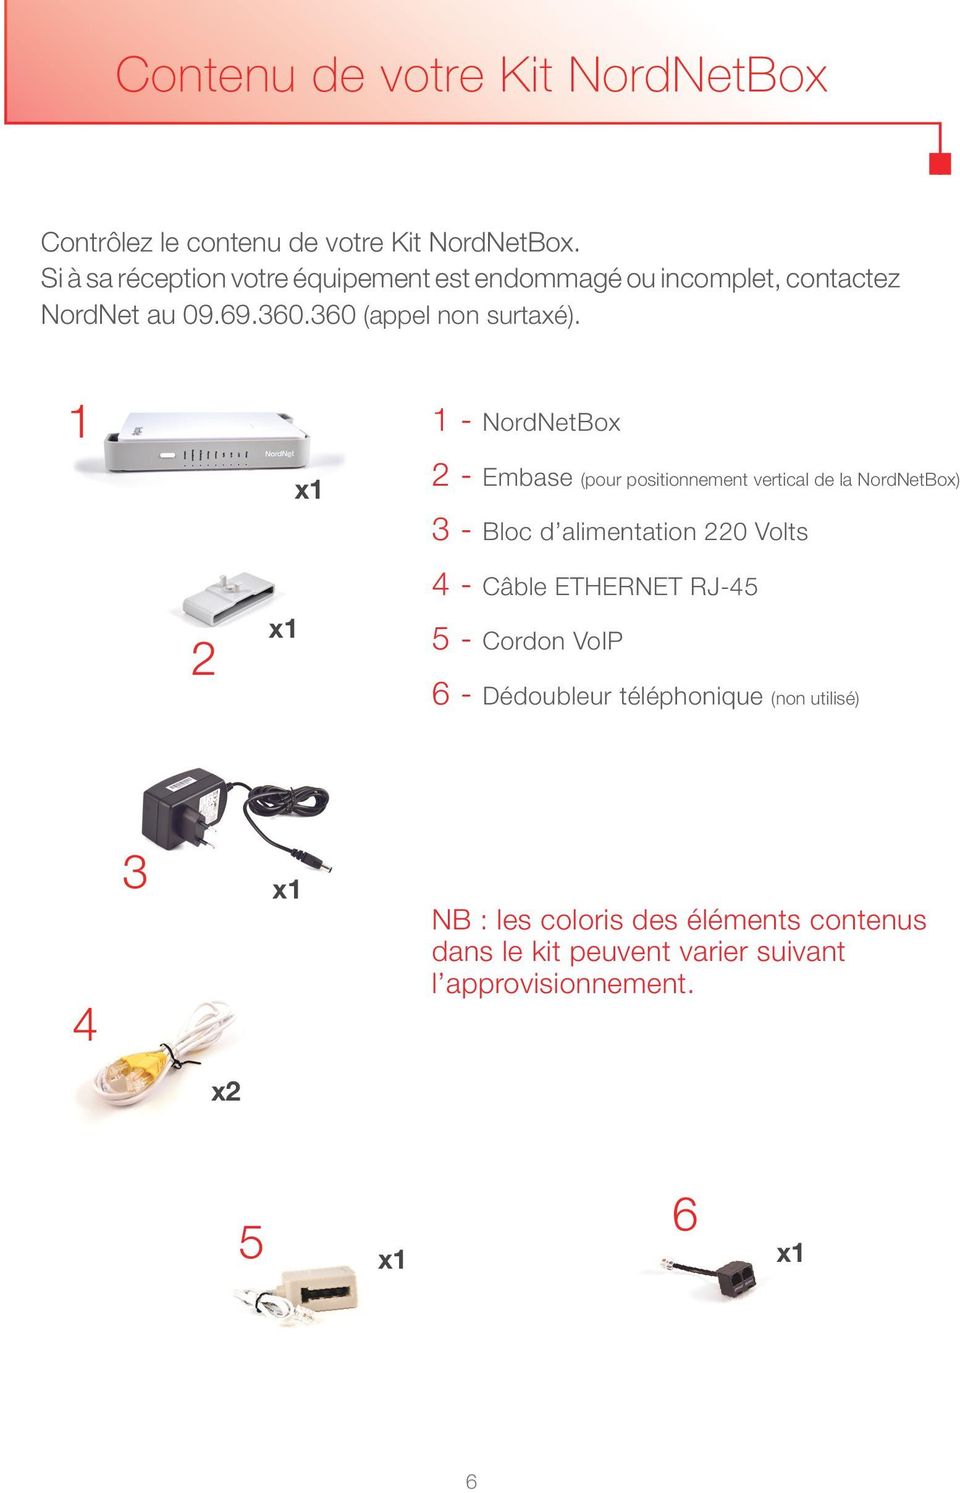 1 1 - NordNetBox 2 x1 x1 2 - Embase (pour positionnement vertical de la NordNetBox) 3 - Bloc d alimentation 220 Volts 4 - Câble